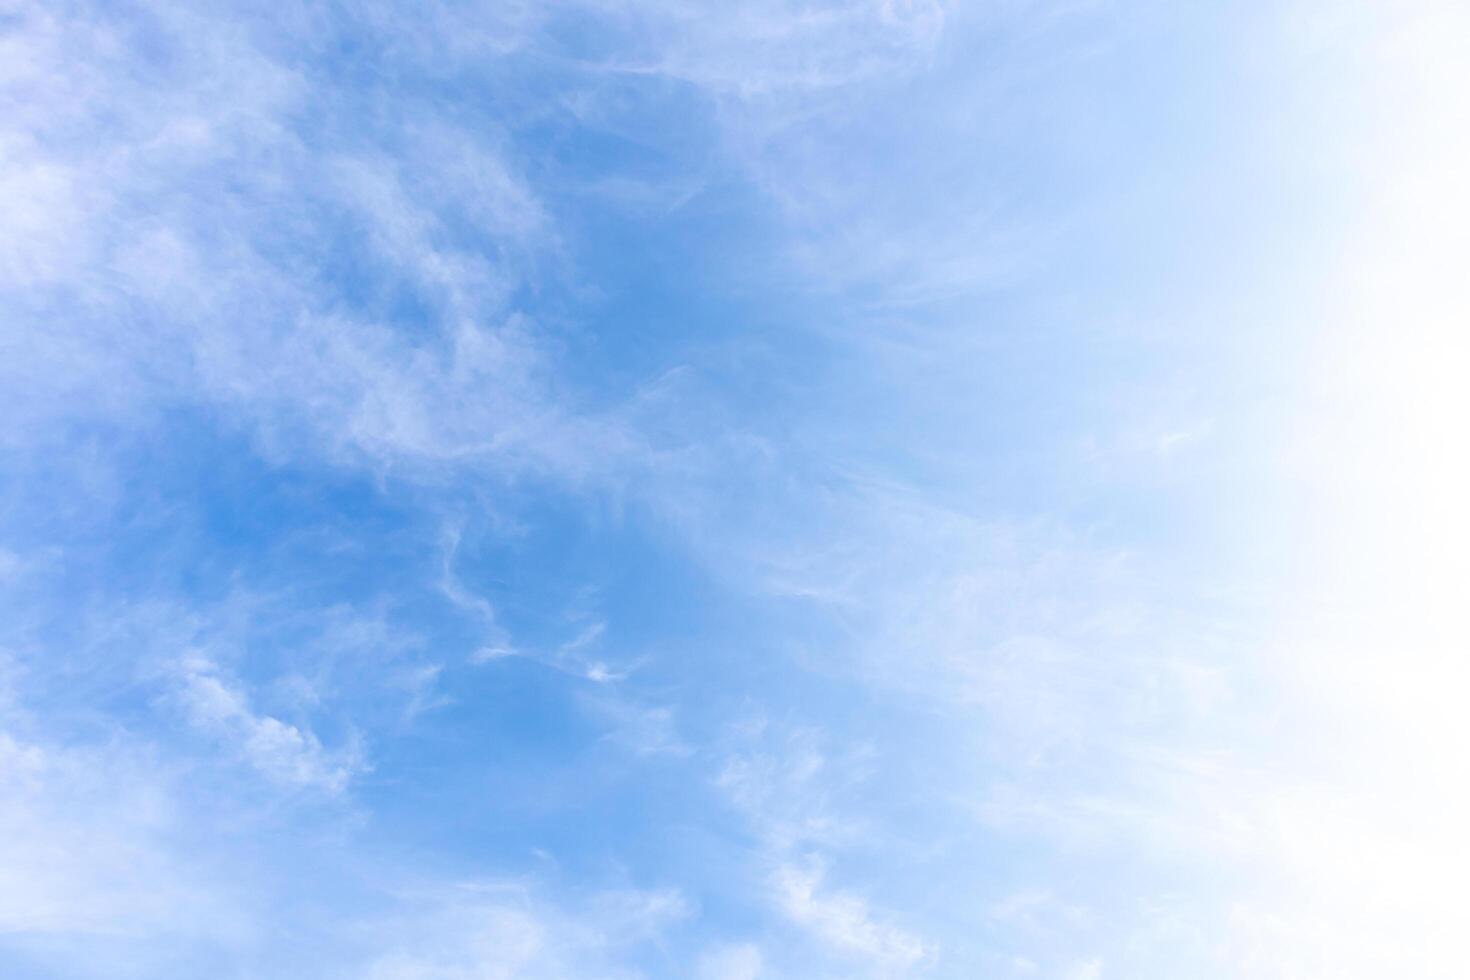 blauer himmel mit wolken, himmel hintergrundbild foto